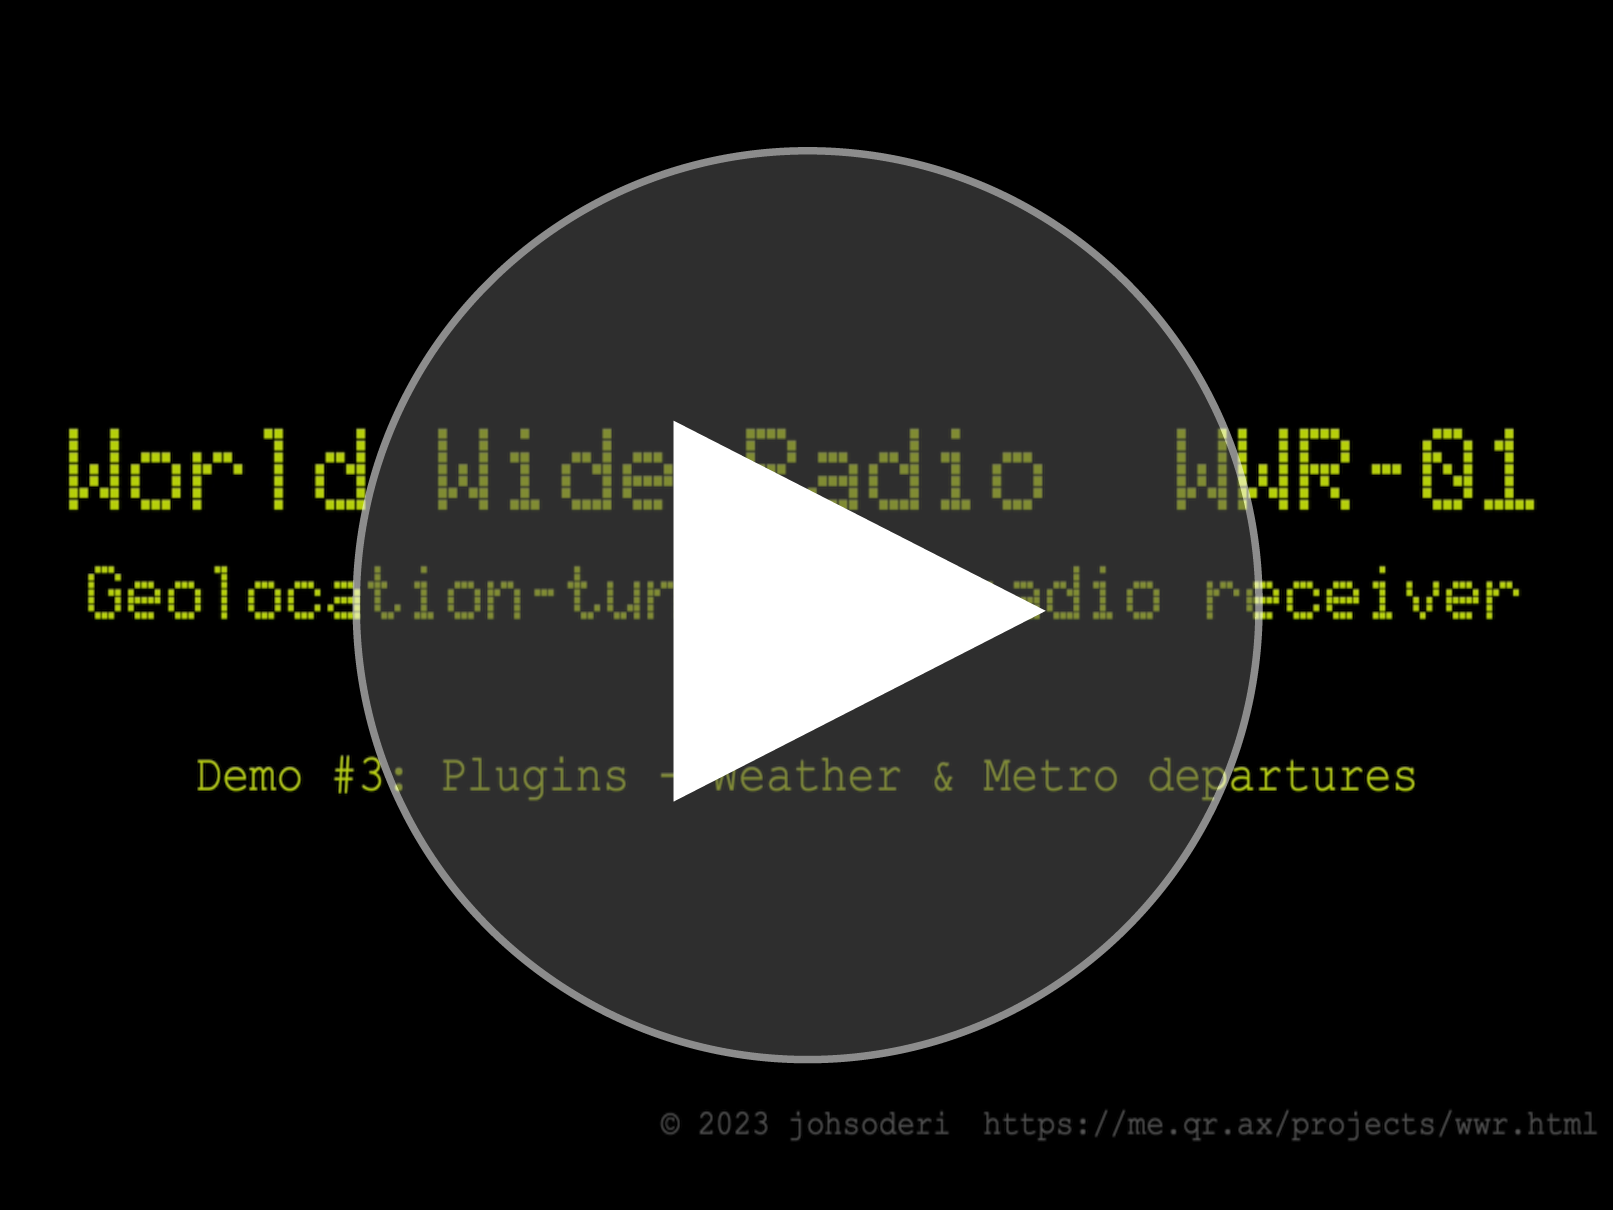 Demo video #3: Plugins - Weather & Metro departures